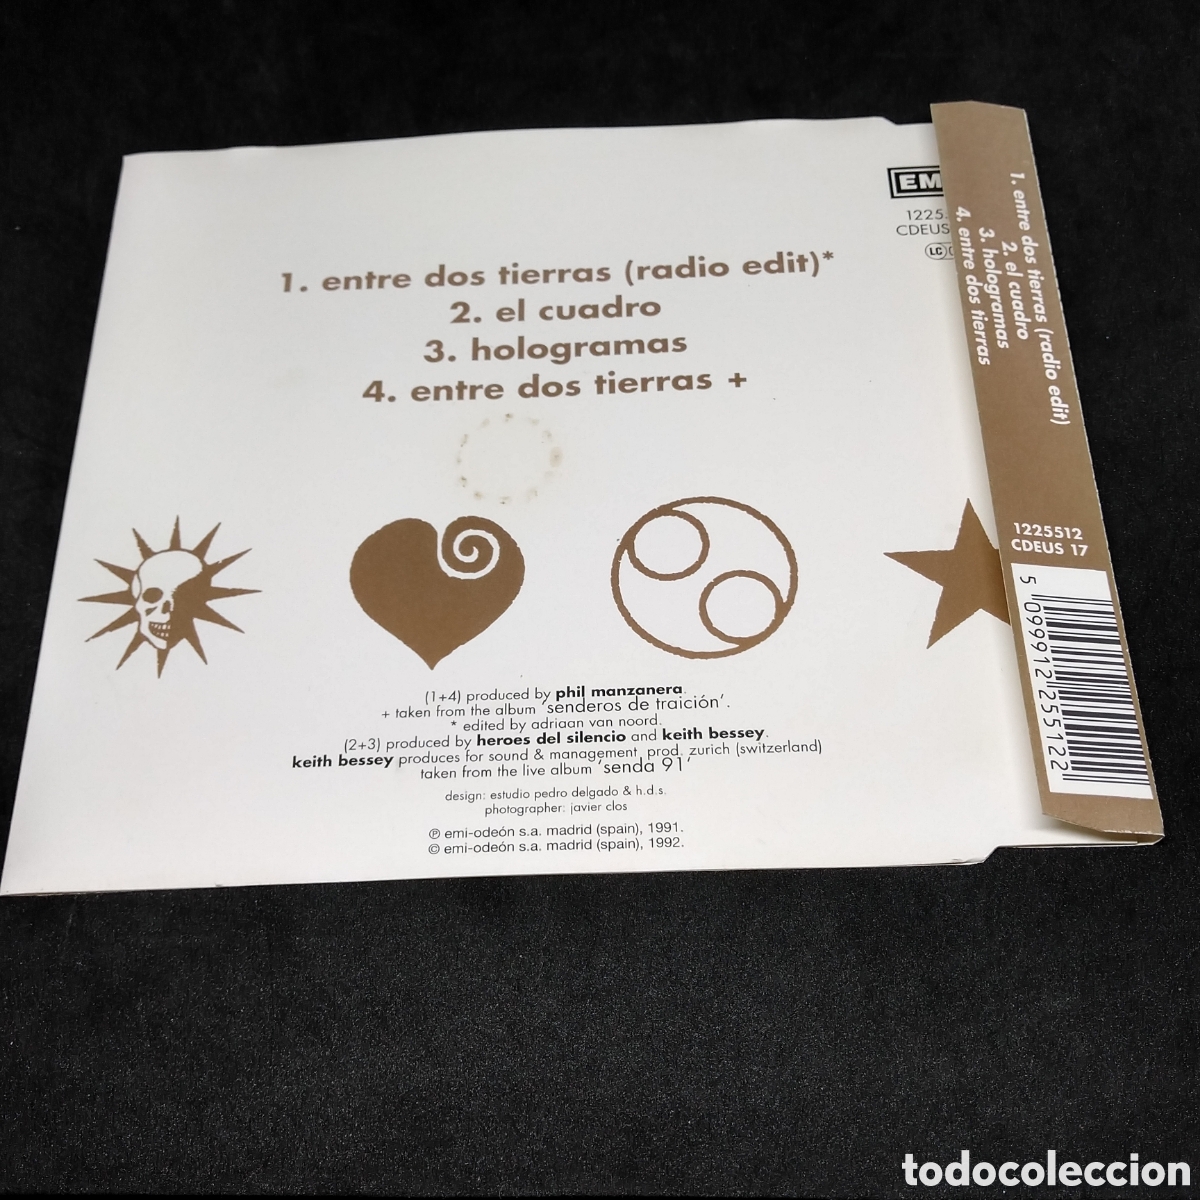 Heroes del Silencio - Single-CD - Entre dos tierras (1992)